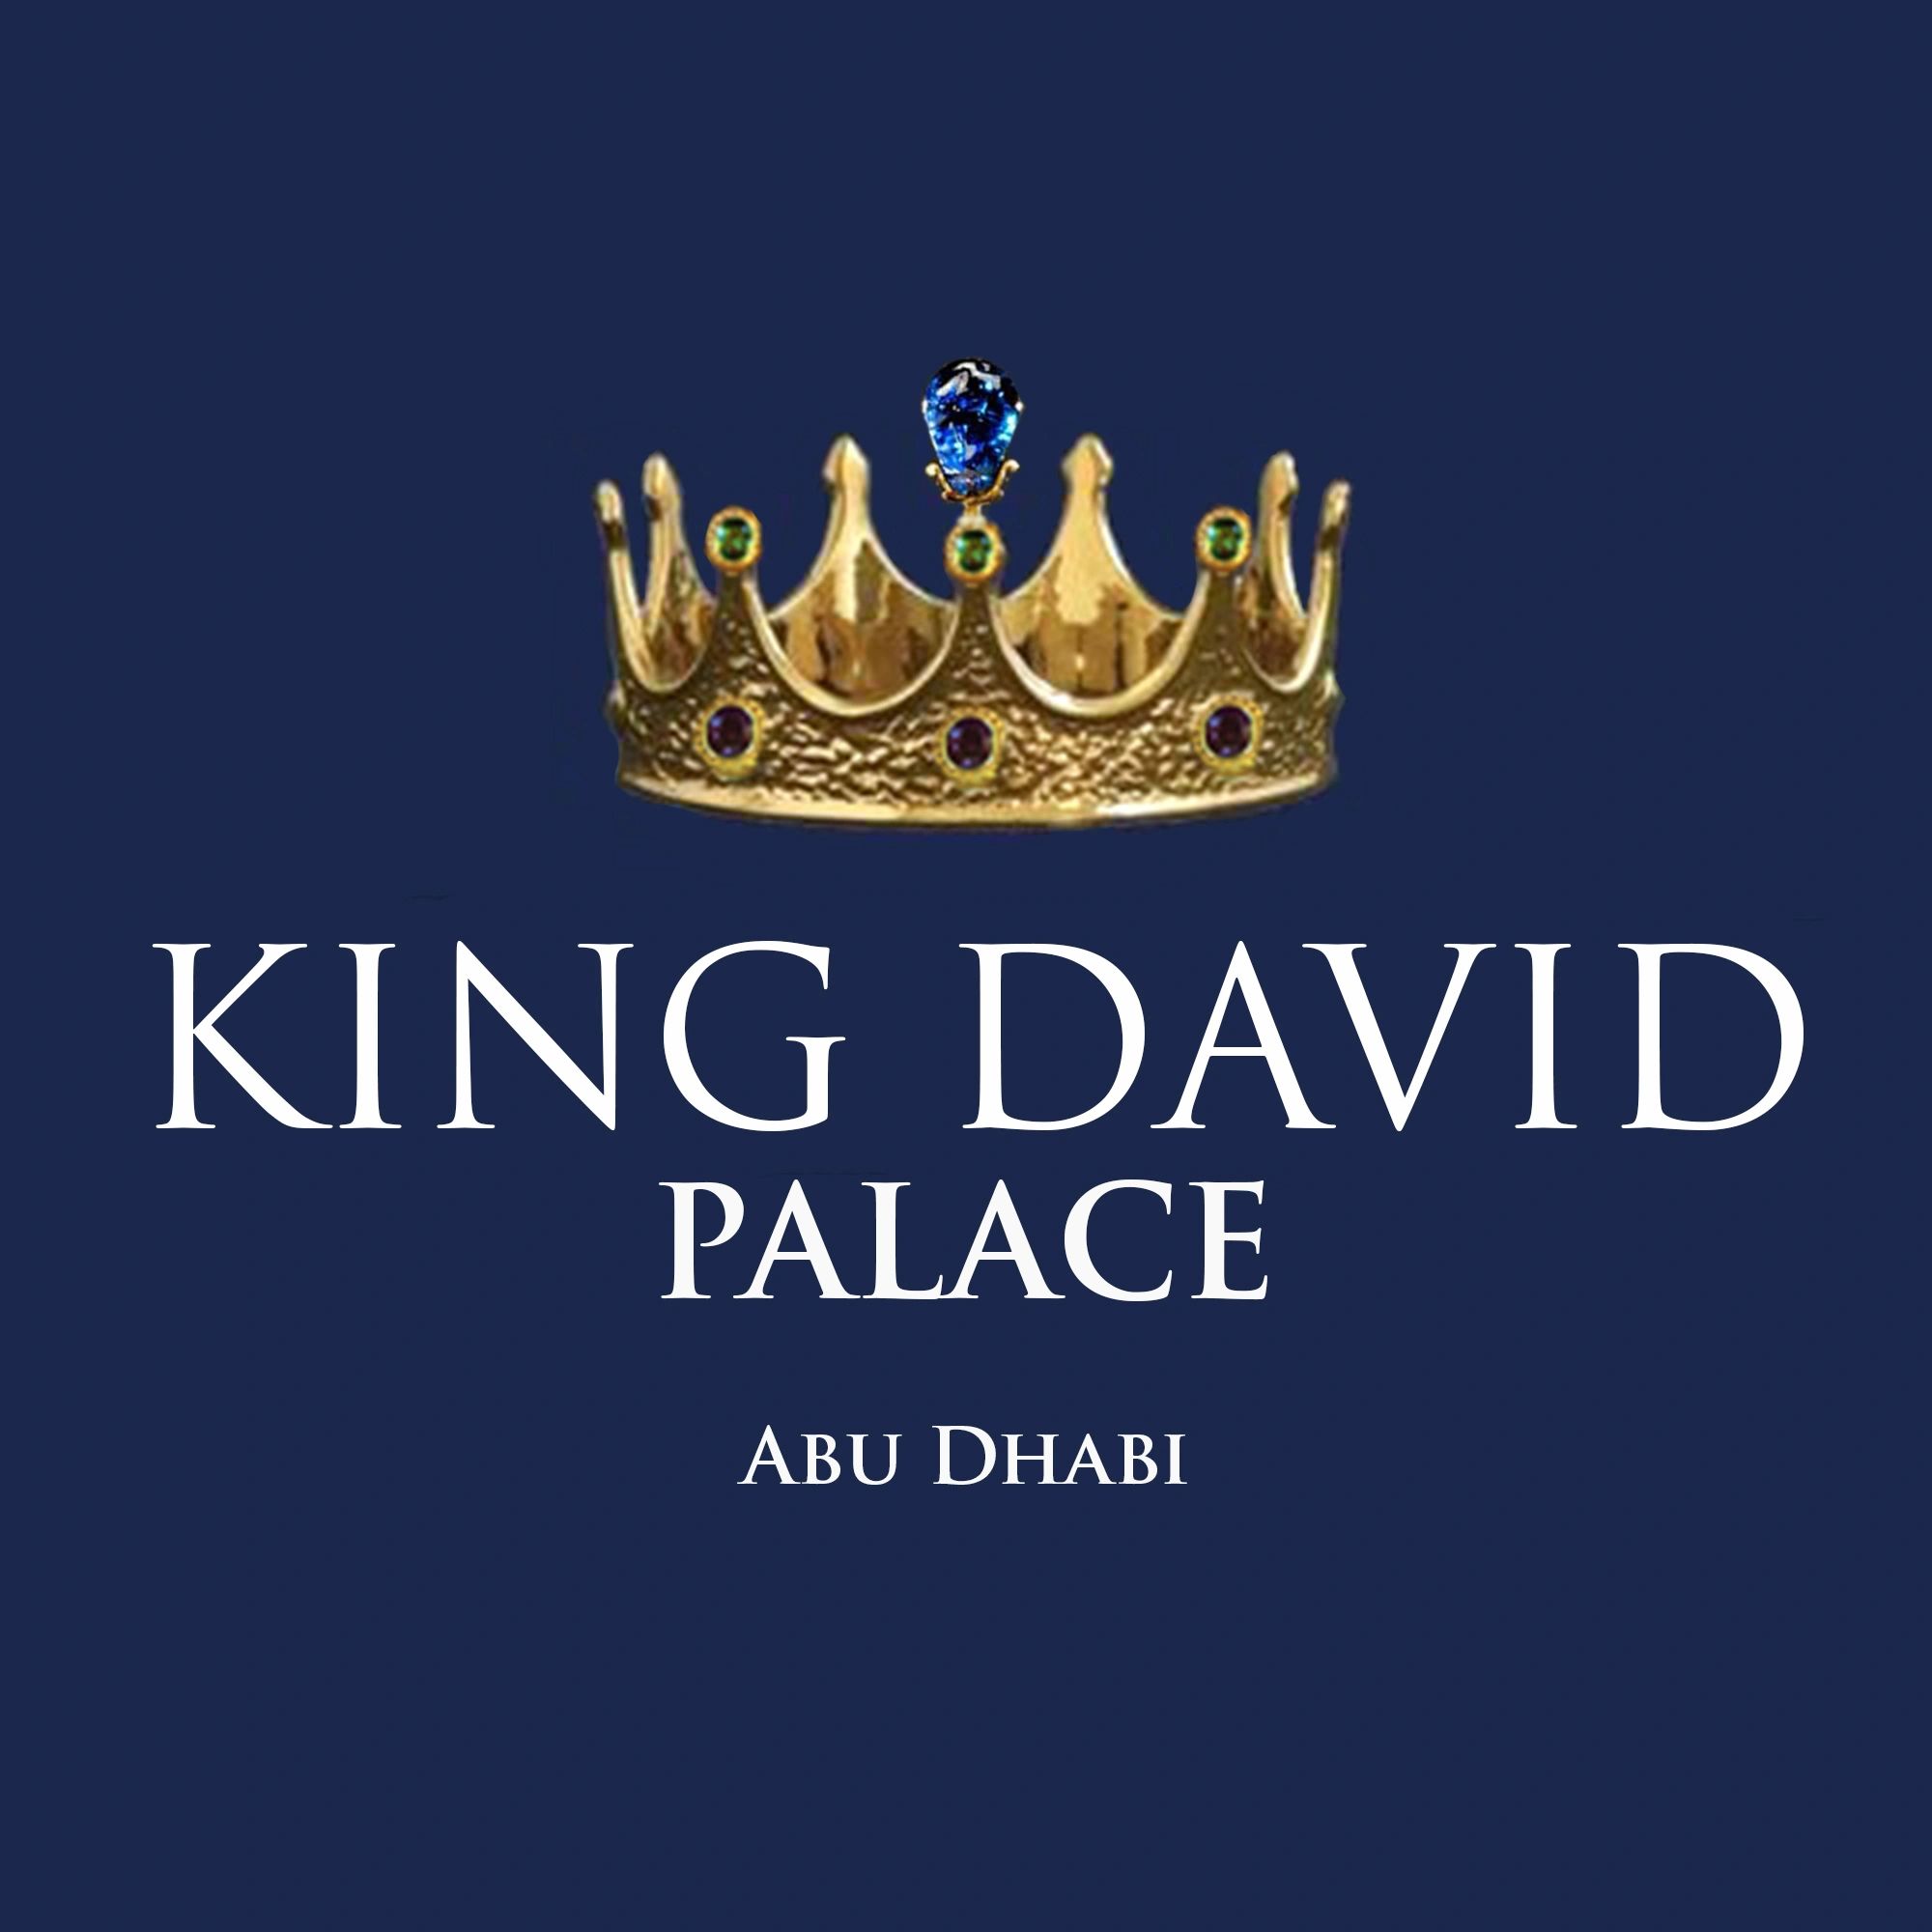 king davids crown